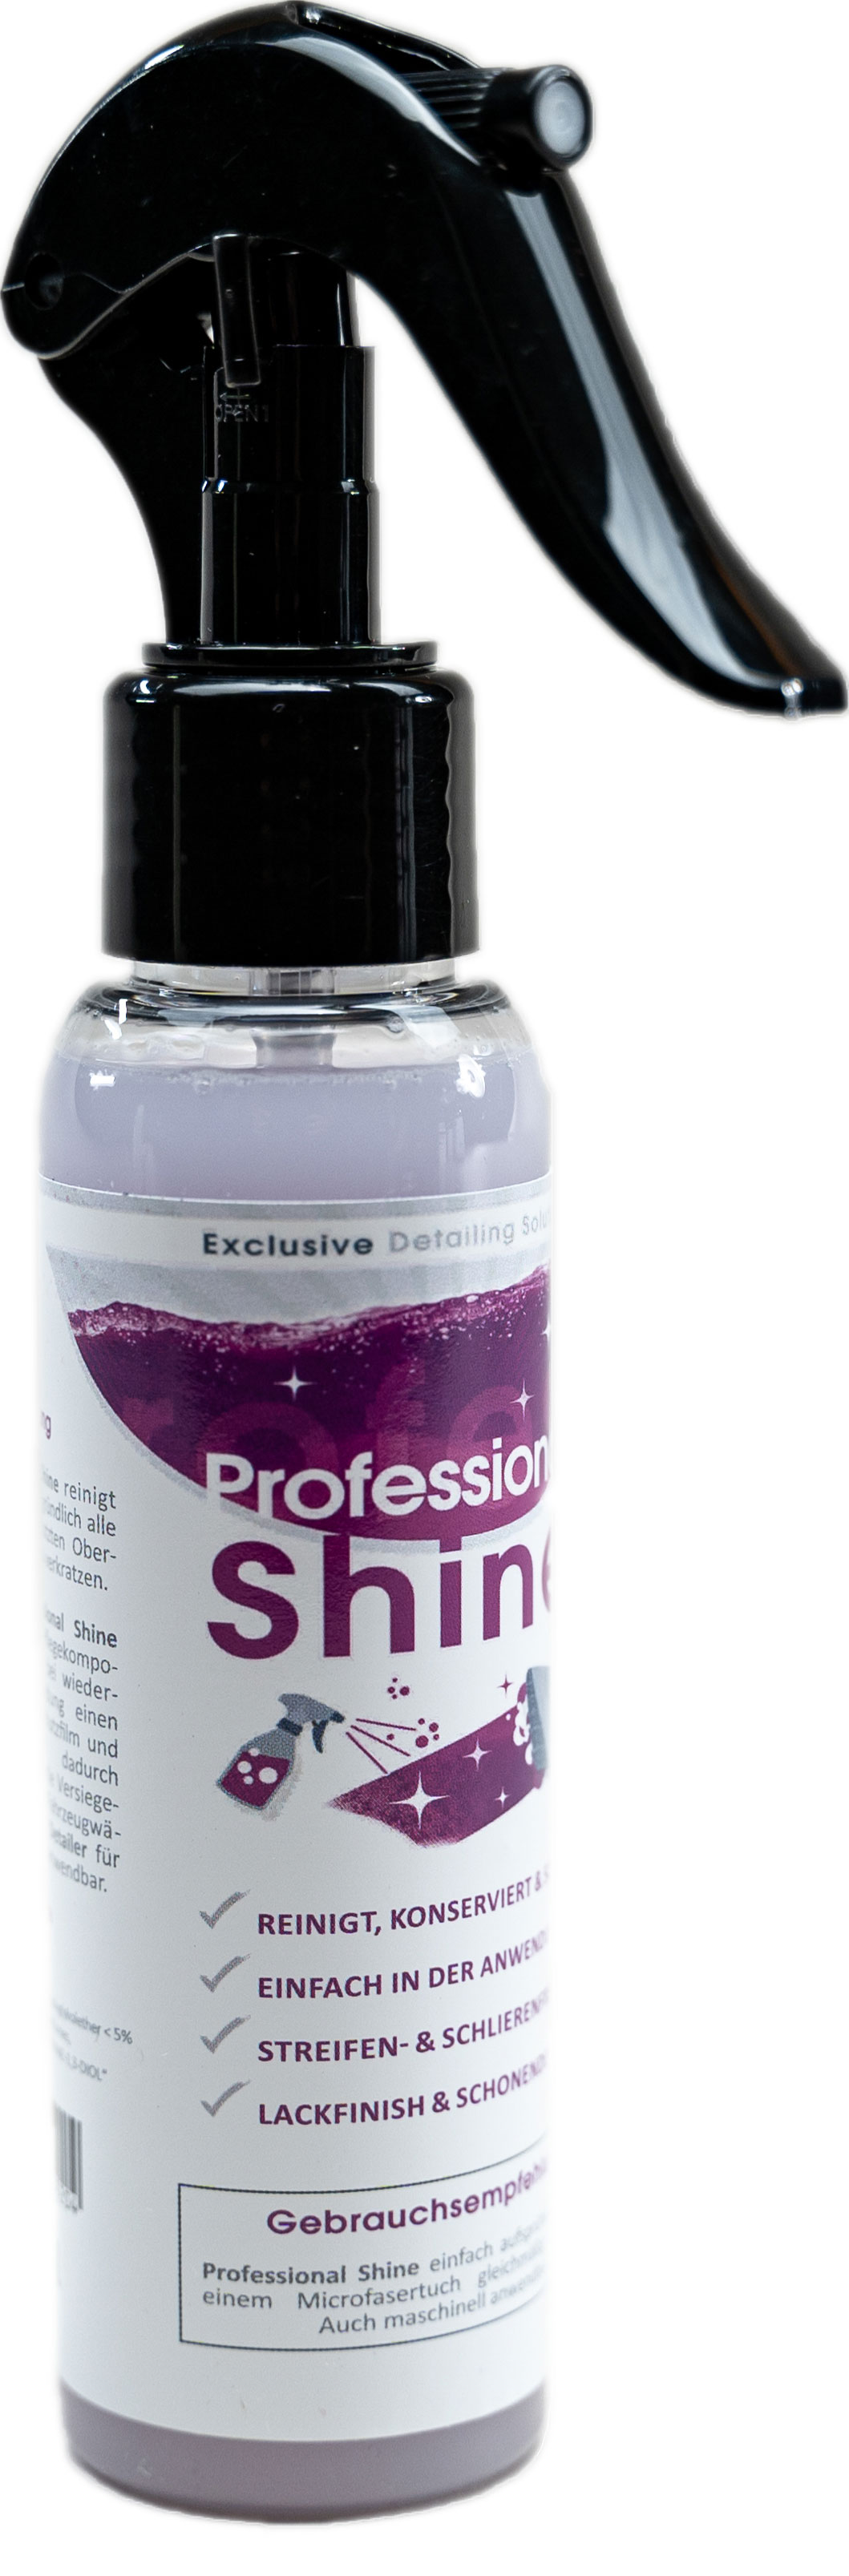 FreyChemie Professional Shine Auto Pflegemittel - Sprühglanz & Detailer für einen perfekten Glanz, silikonölfrei